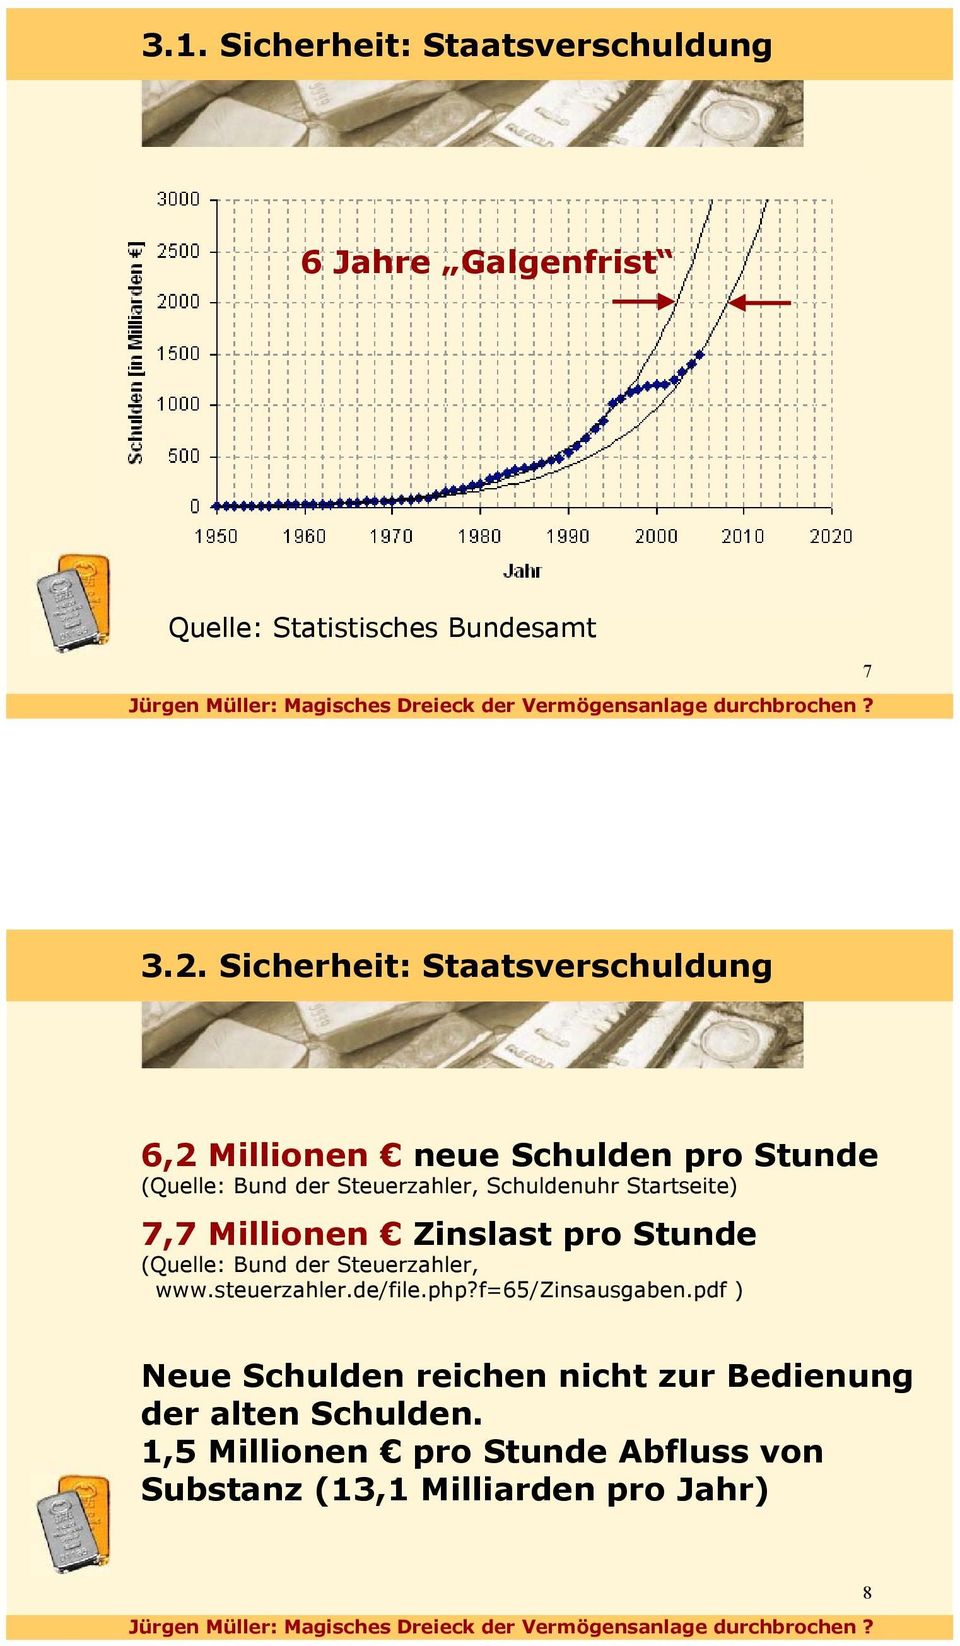 Startseite) 7,7 Millionen Zinslast pro Stunde (Quelle: Bund der Steuerzahler, www.steuerzahler.de/file.php?